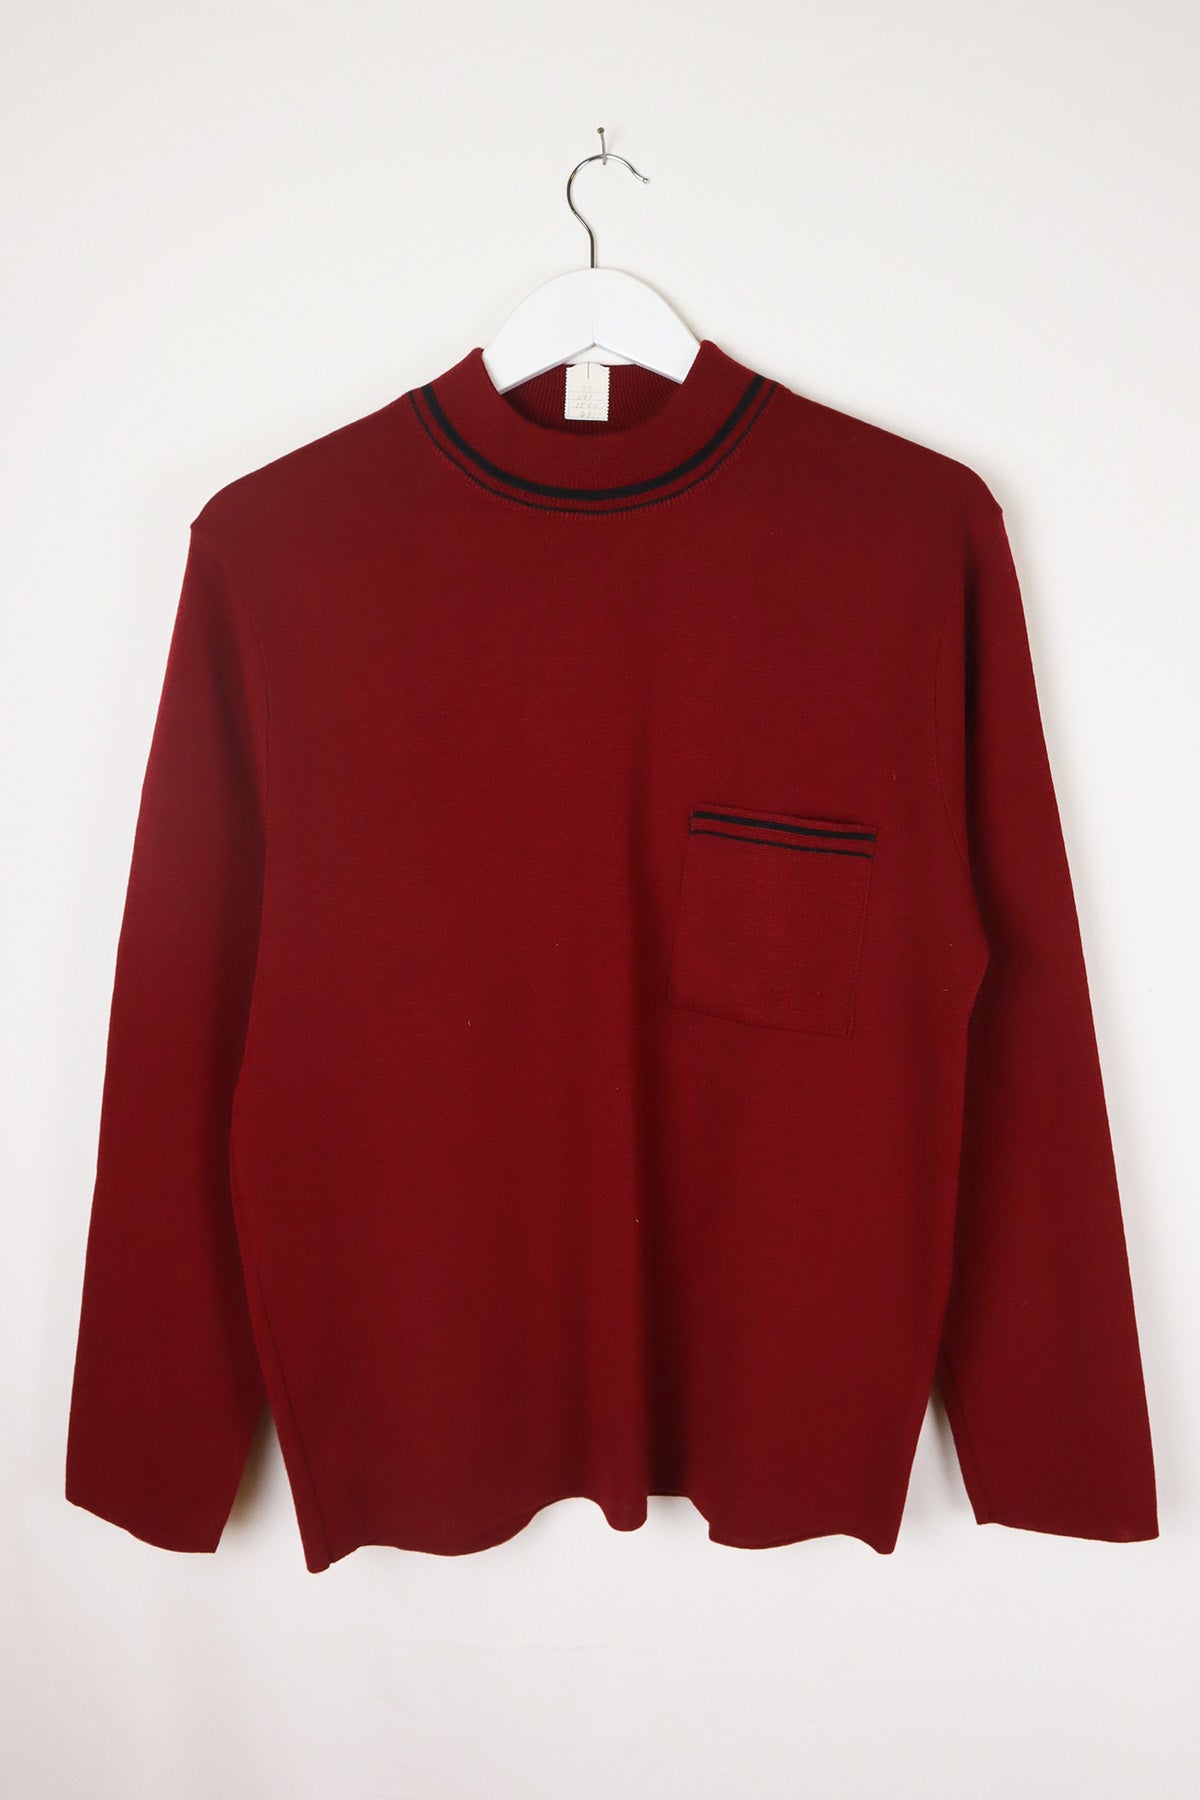 Unisex Vintage Pullover Dunkelrot Stehkragen ( Gr. M )